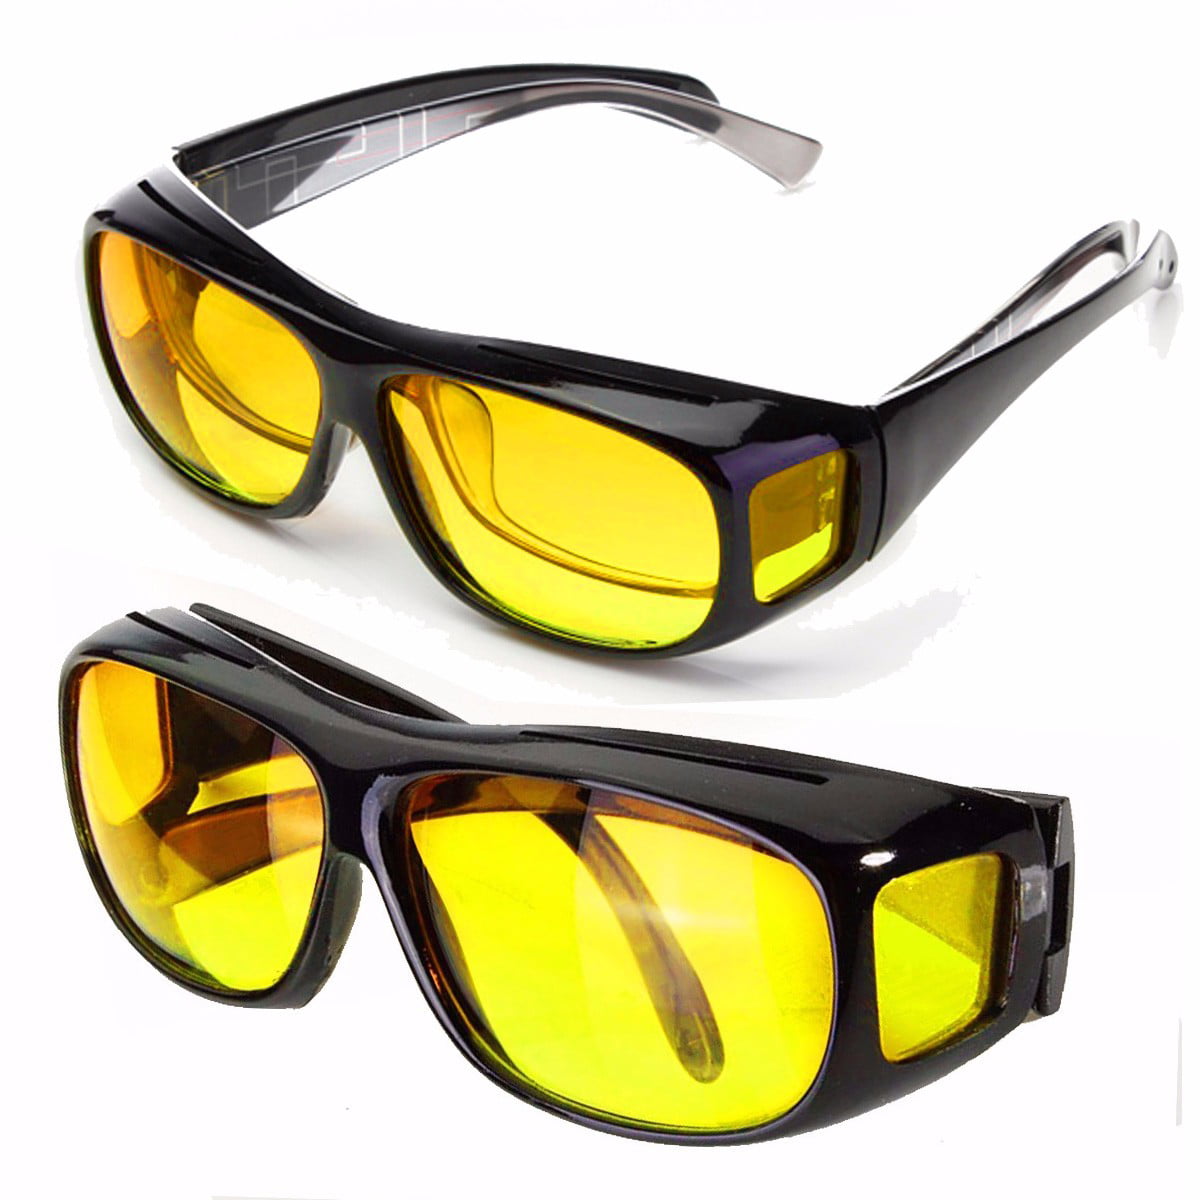 Купить солнцезащитные очки мужские для водителя. Очки AUTOENJOY Profi-Photochromic lf02 g. Леомакс очки антиблик. Антифары Polarized Sport.